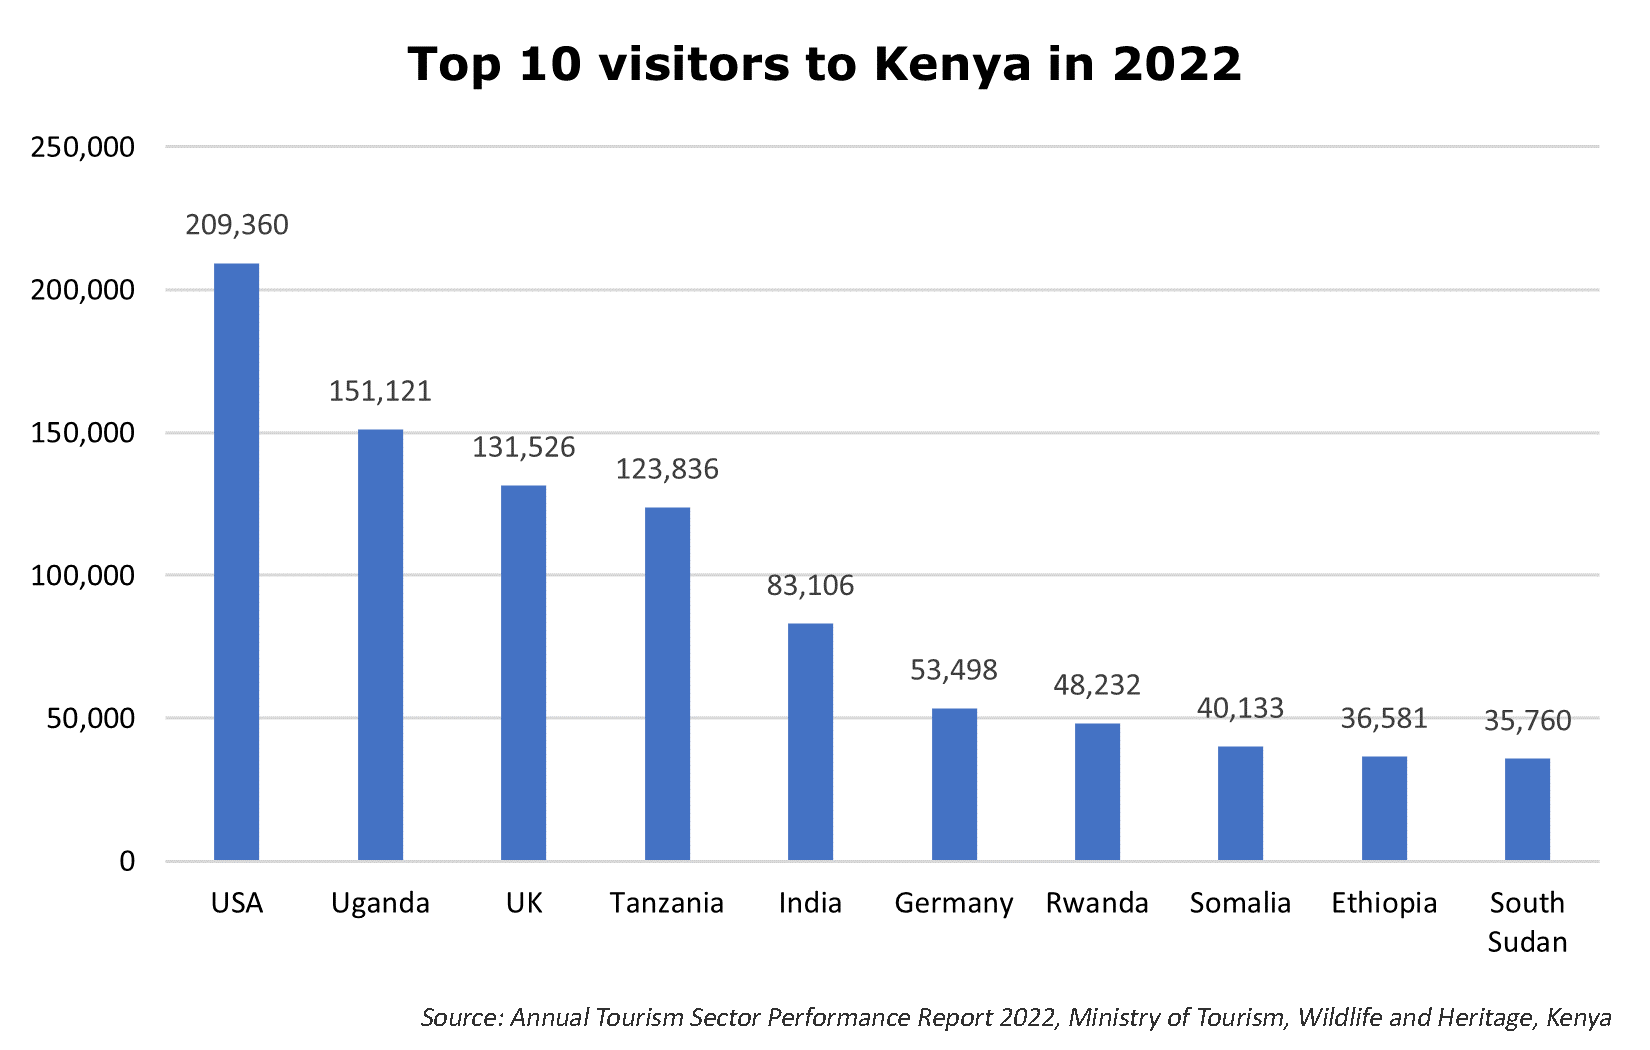 Top 10 visitors to Kenya in 2022